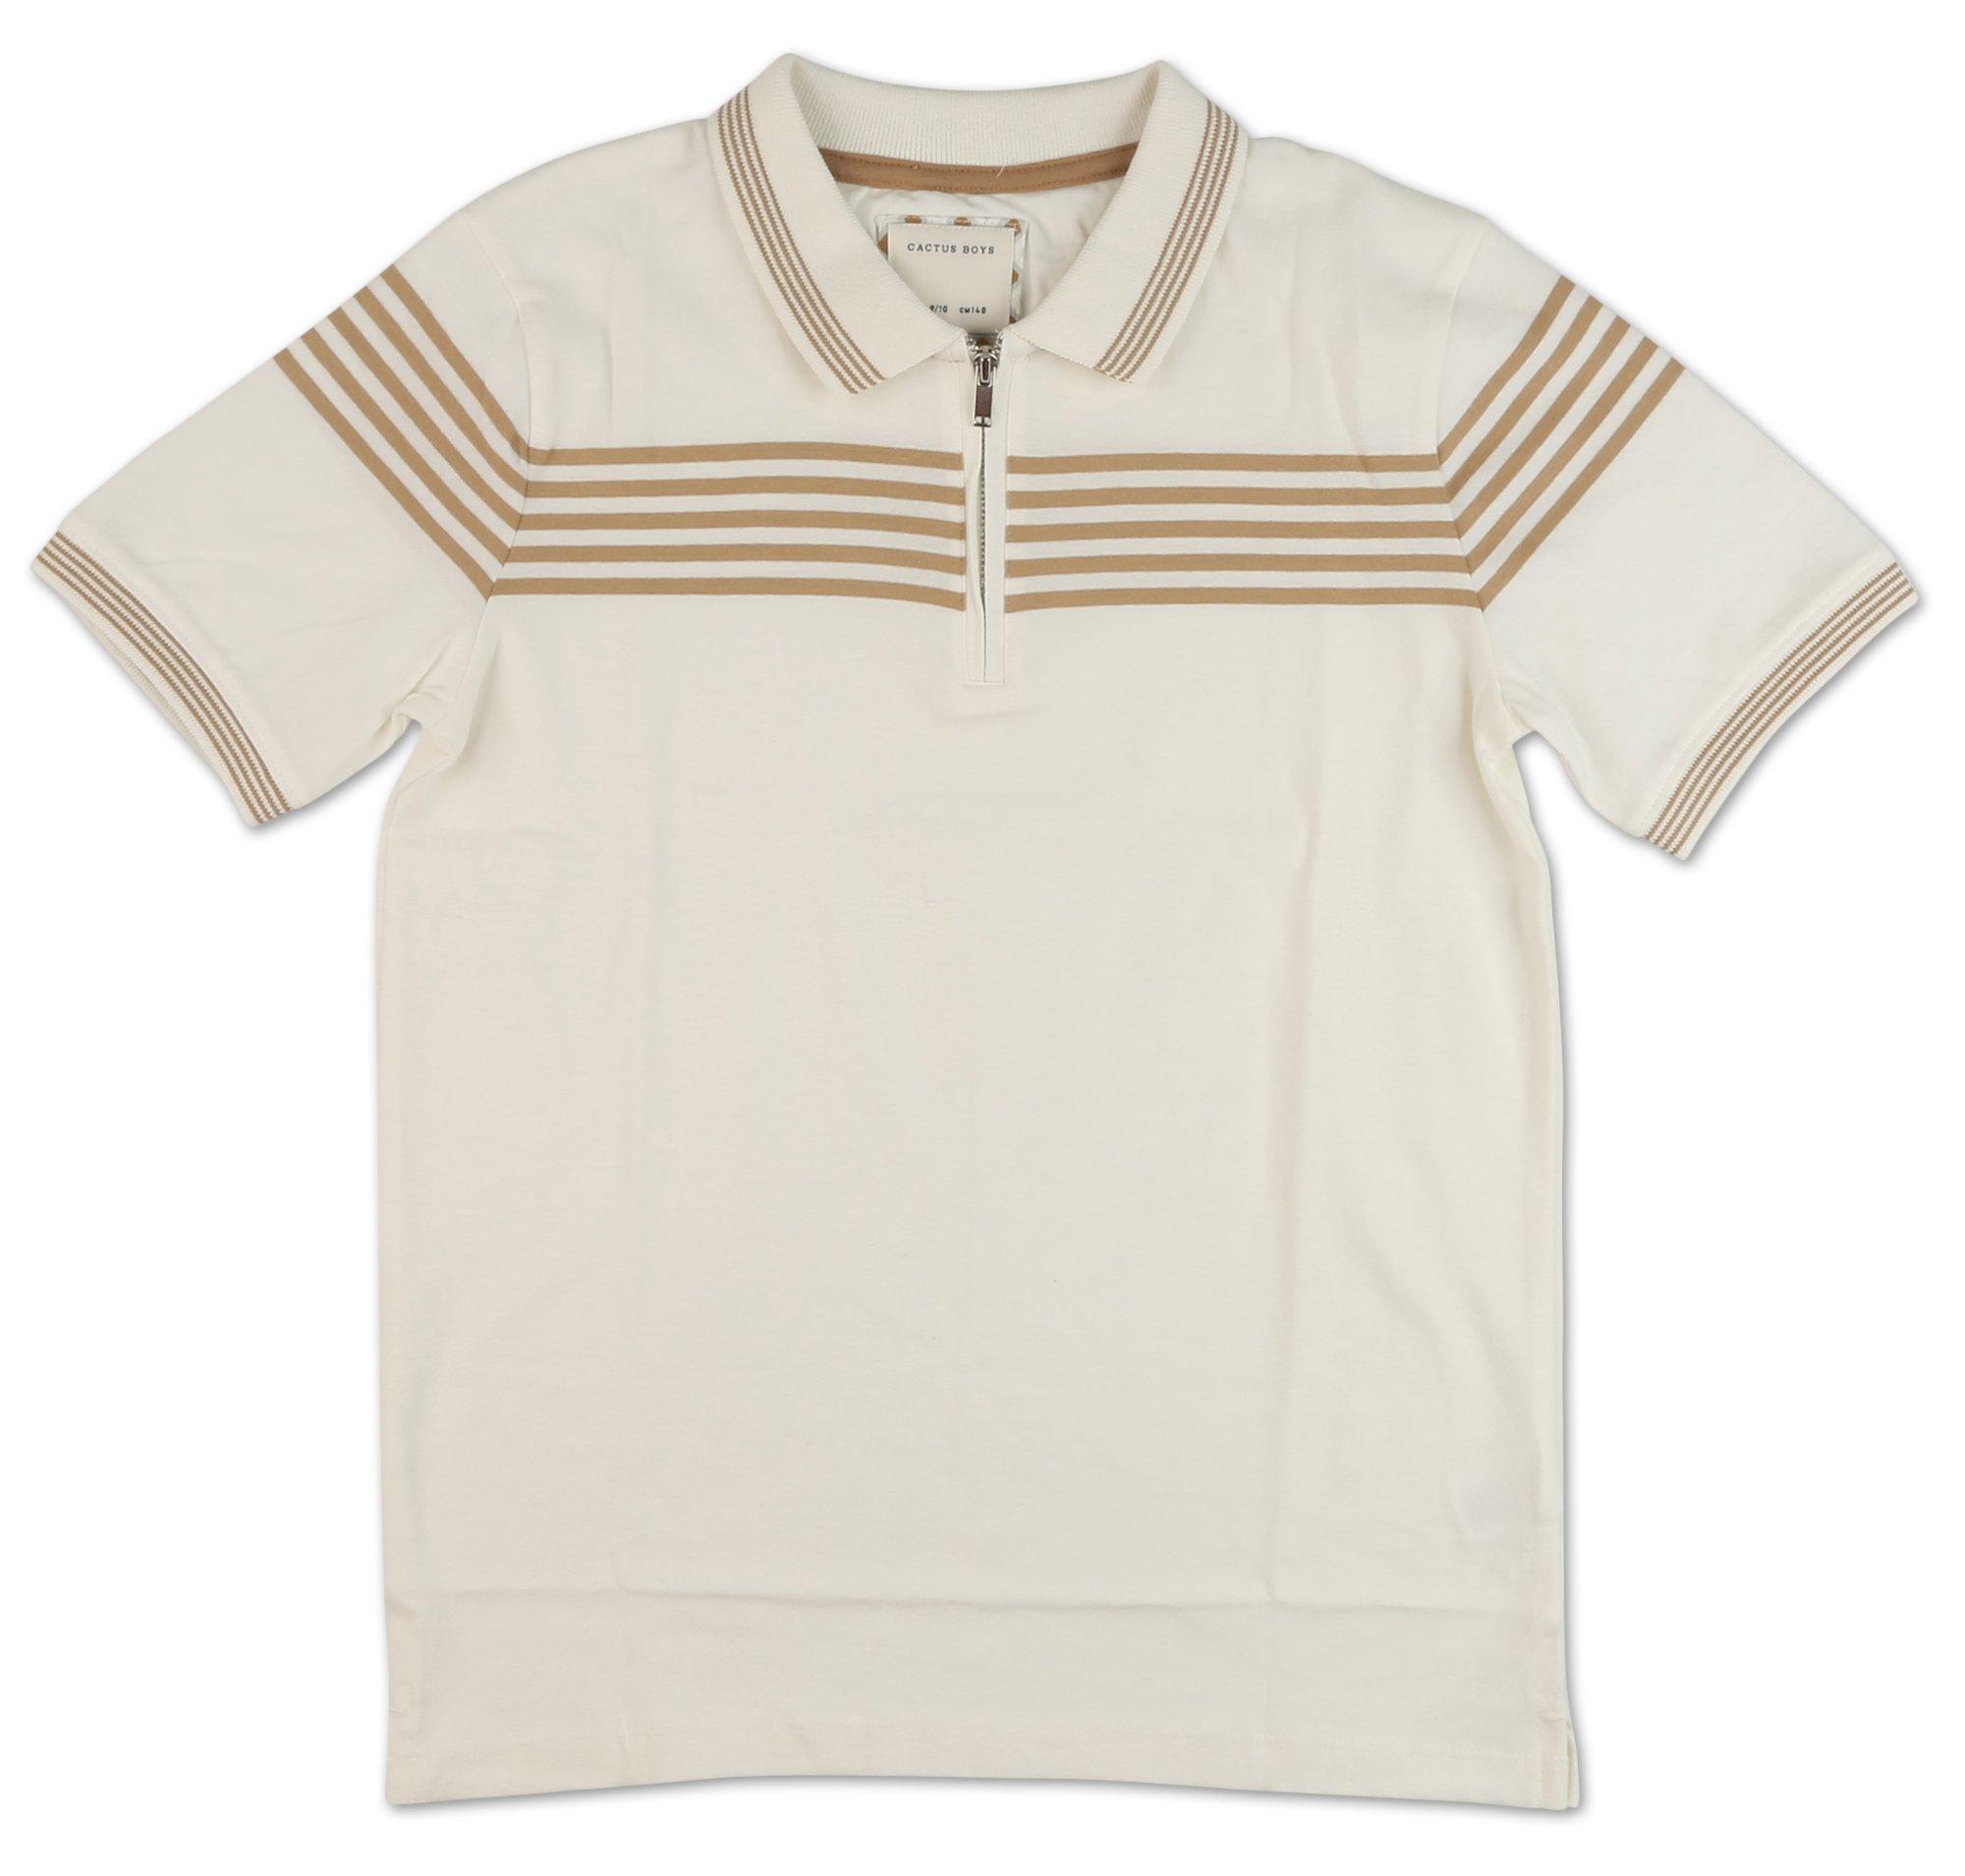 Boys Stripe Print Knit Polo Shirt